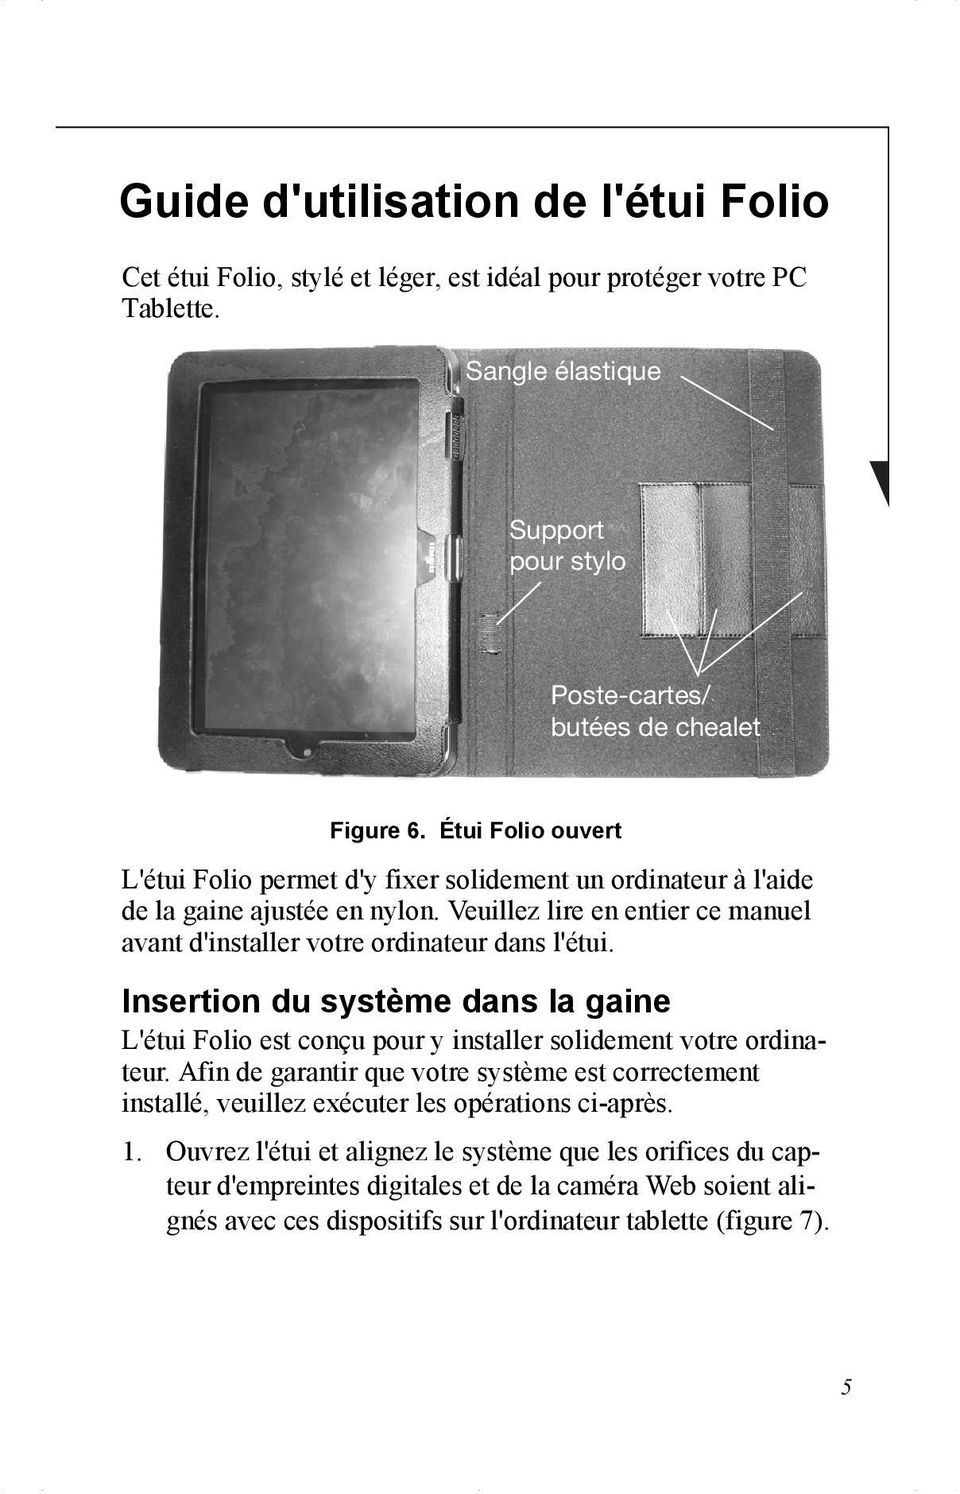 Insertion du système dans la gaine L'étui Folio est conçu pour y installer solidement votre ordinateur.